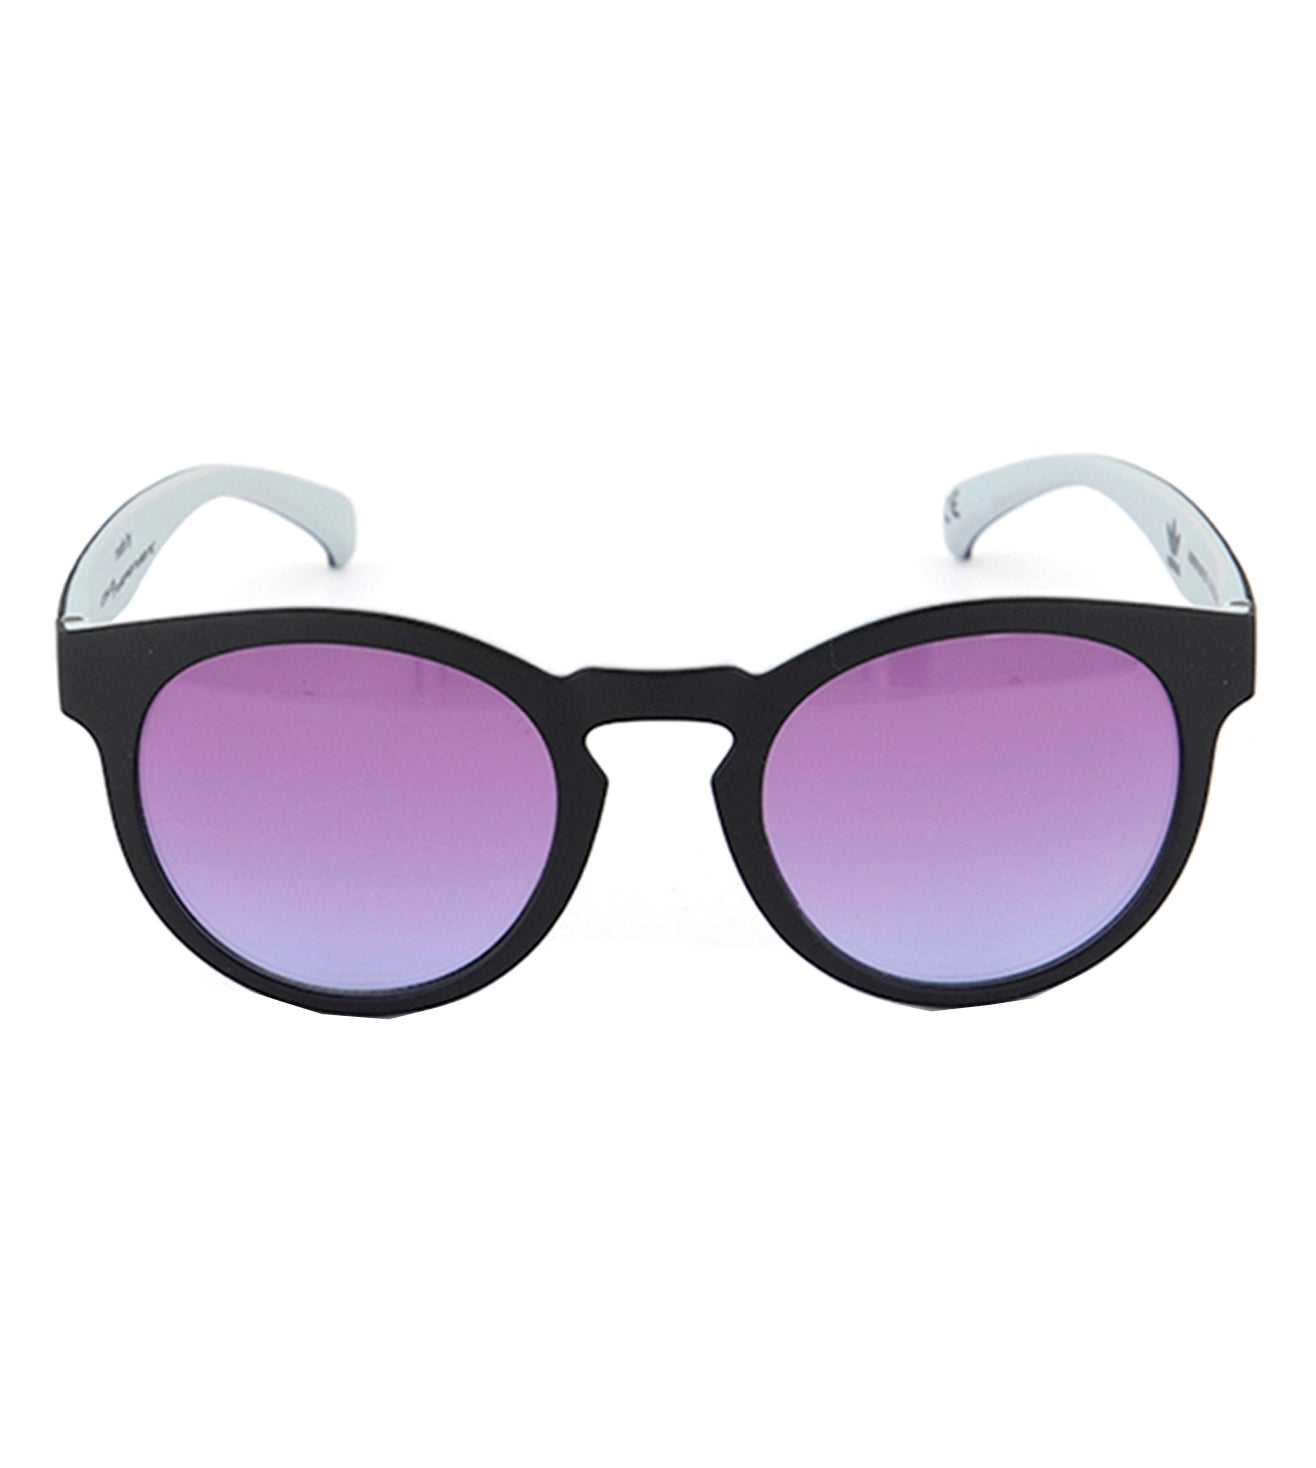 Adidas Originals Unisex Violet Round Sunglasses